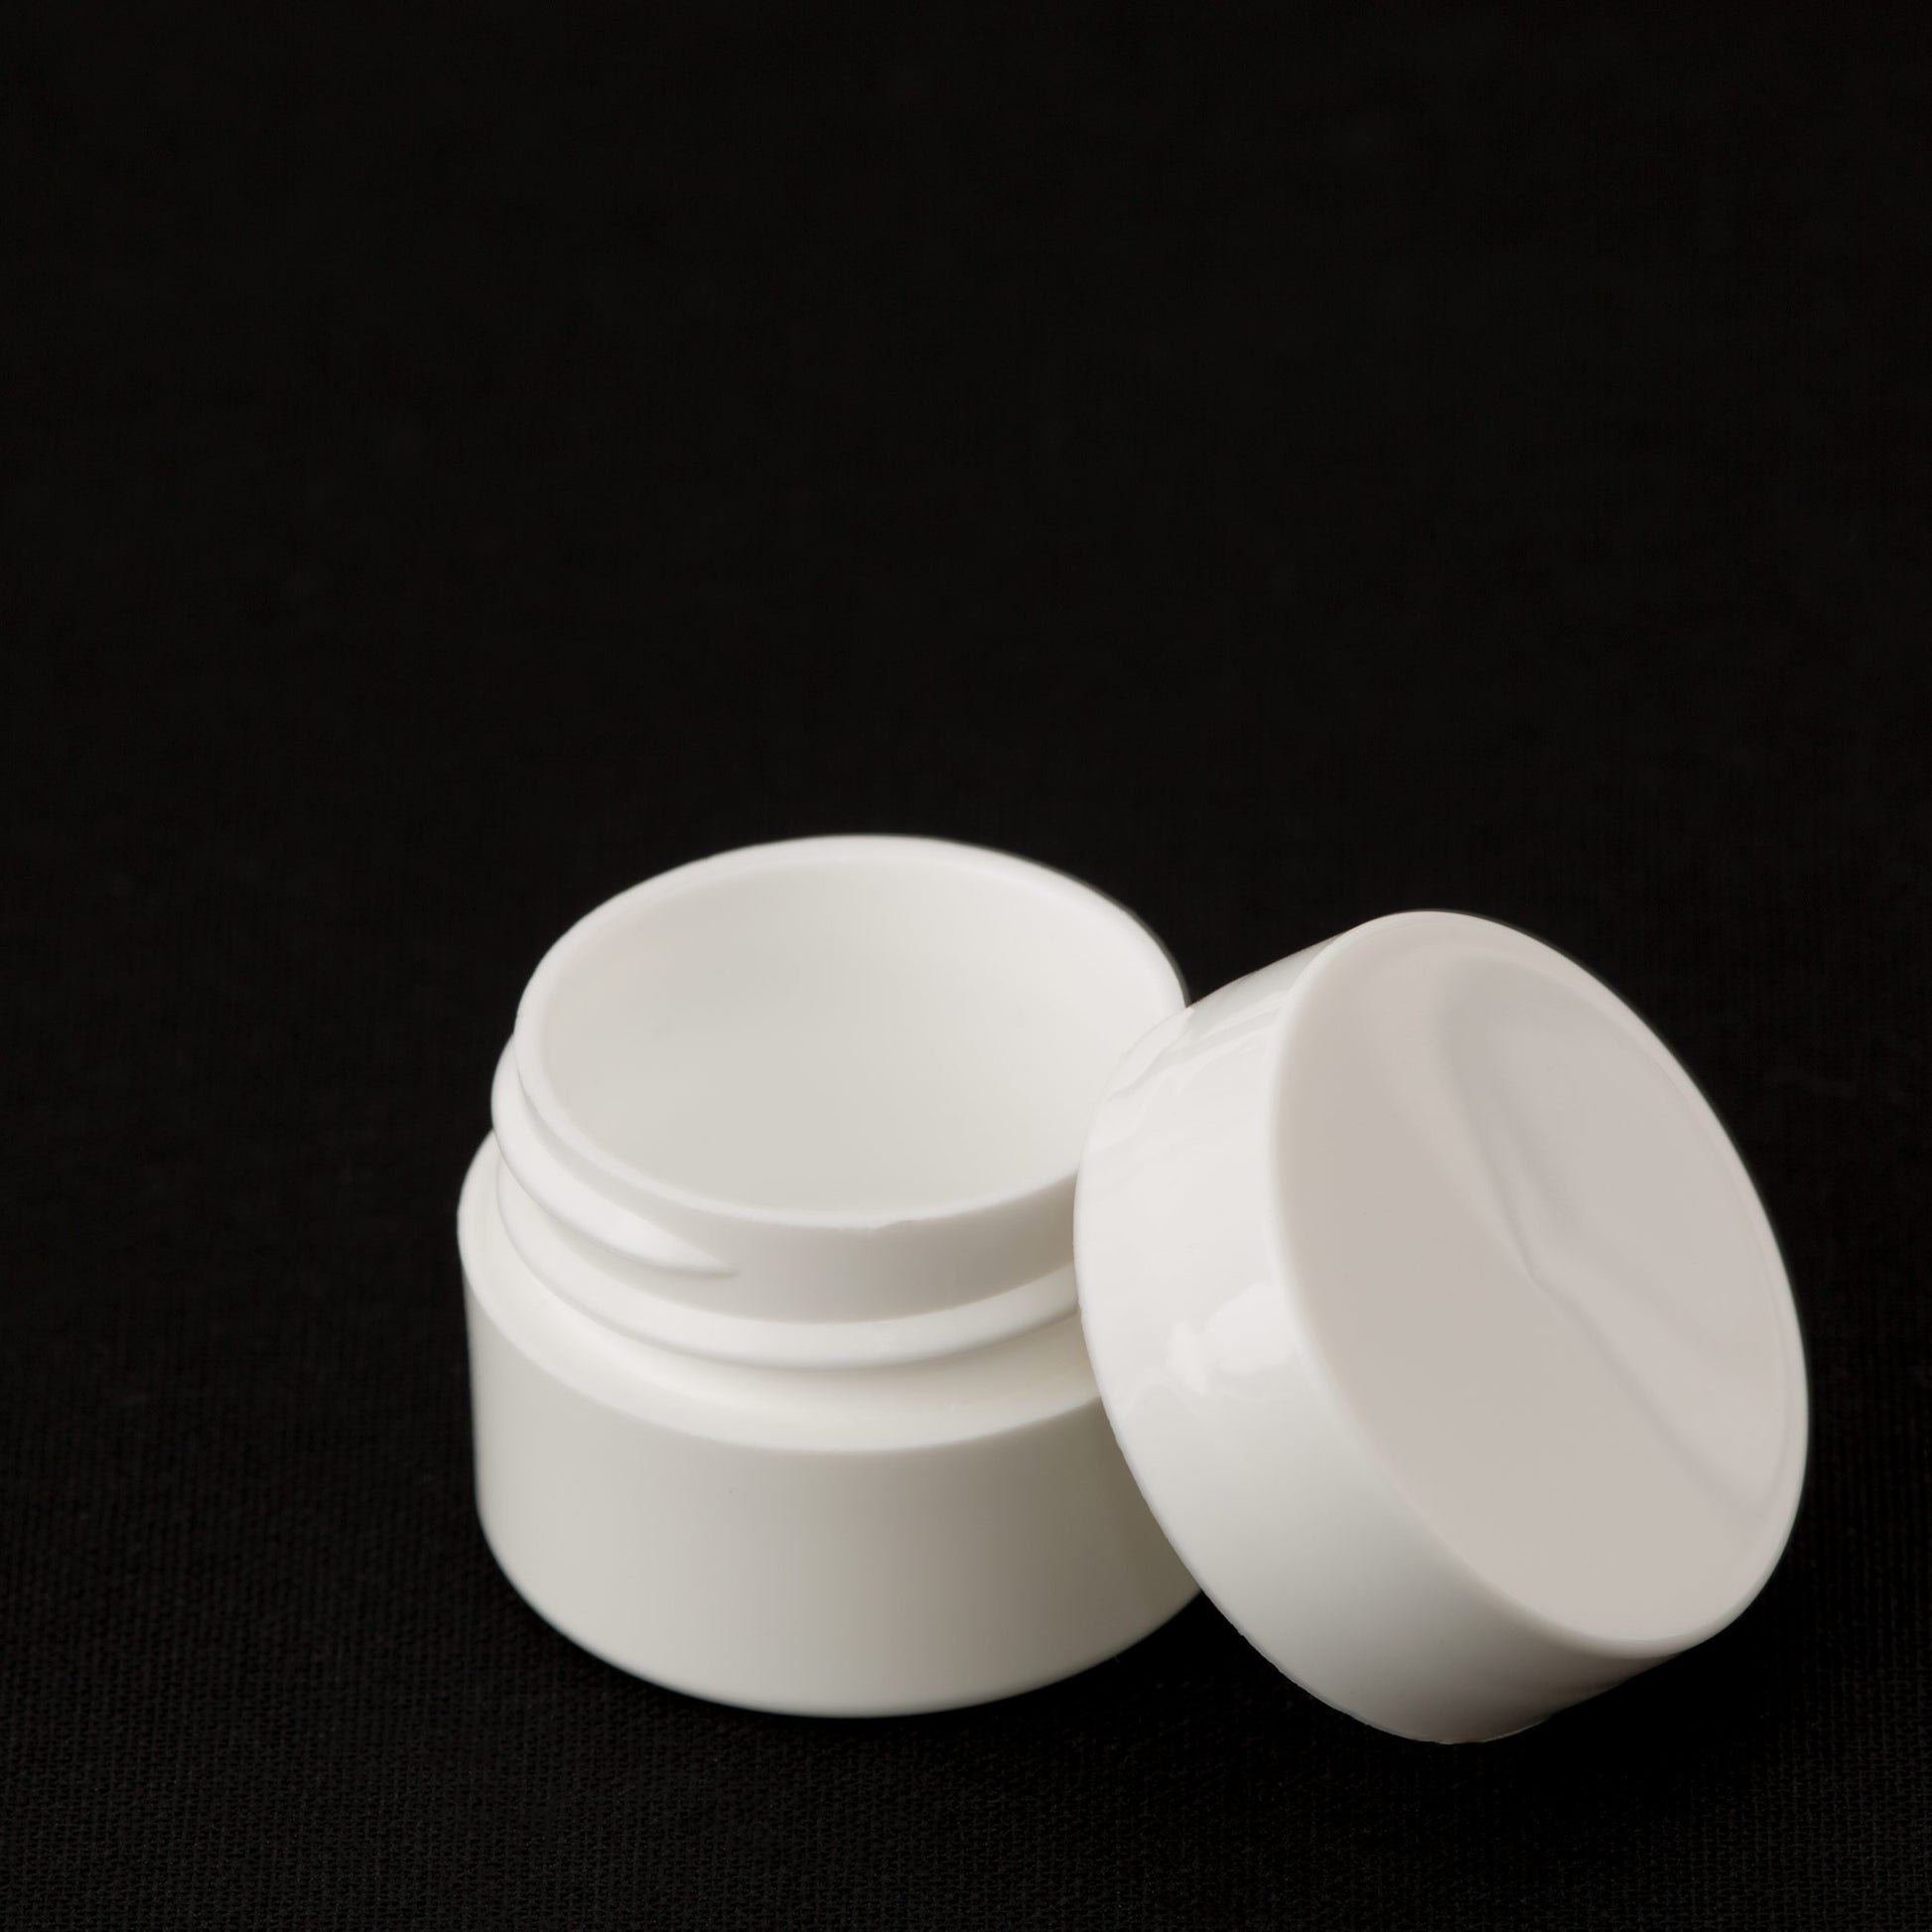 .25 oz / 7.5 ml White Lip Balm Jar with White Cap